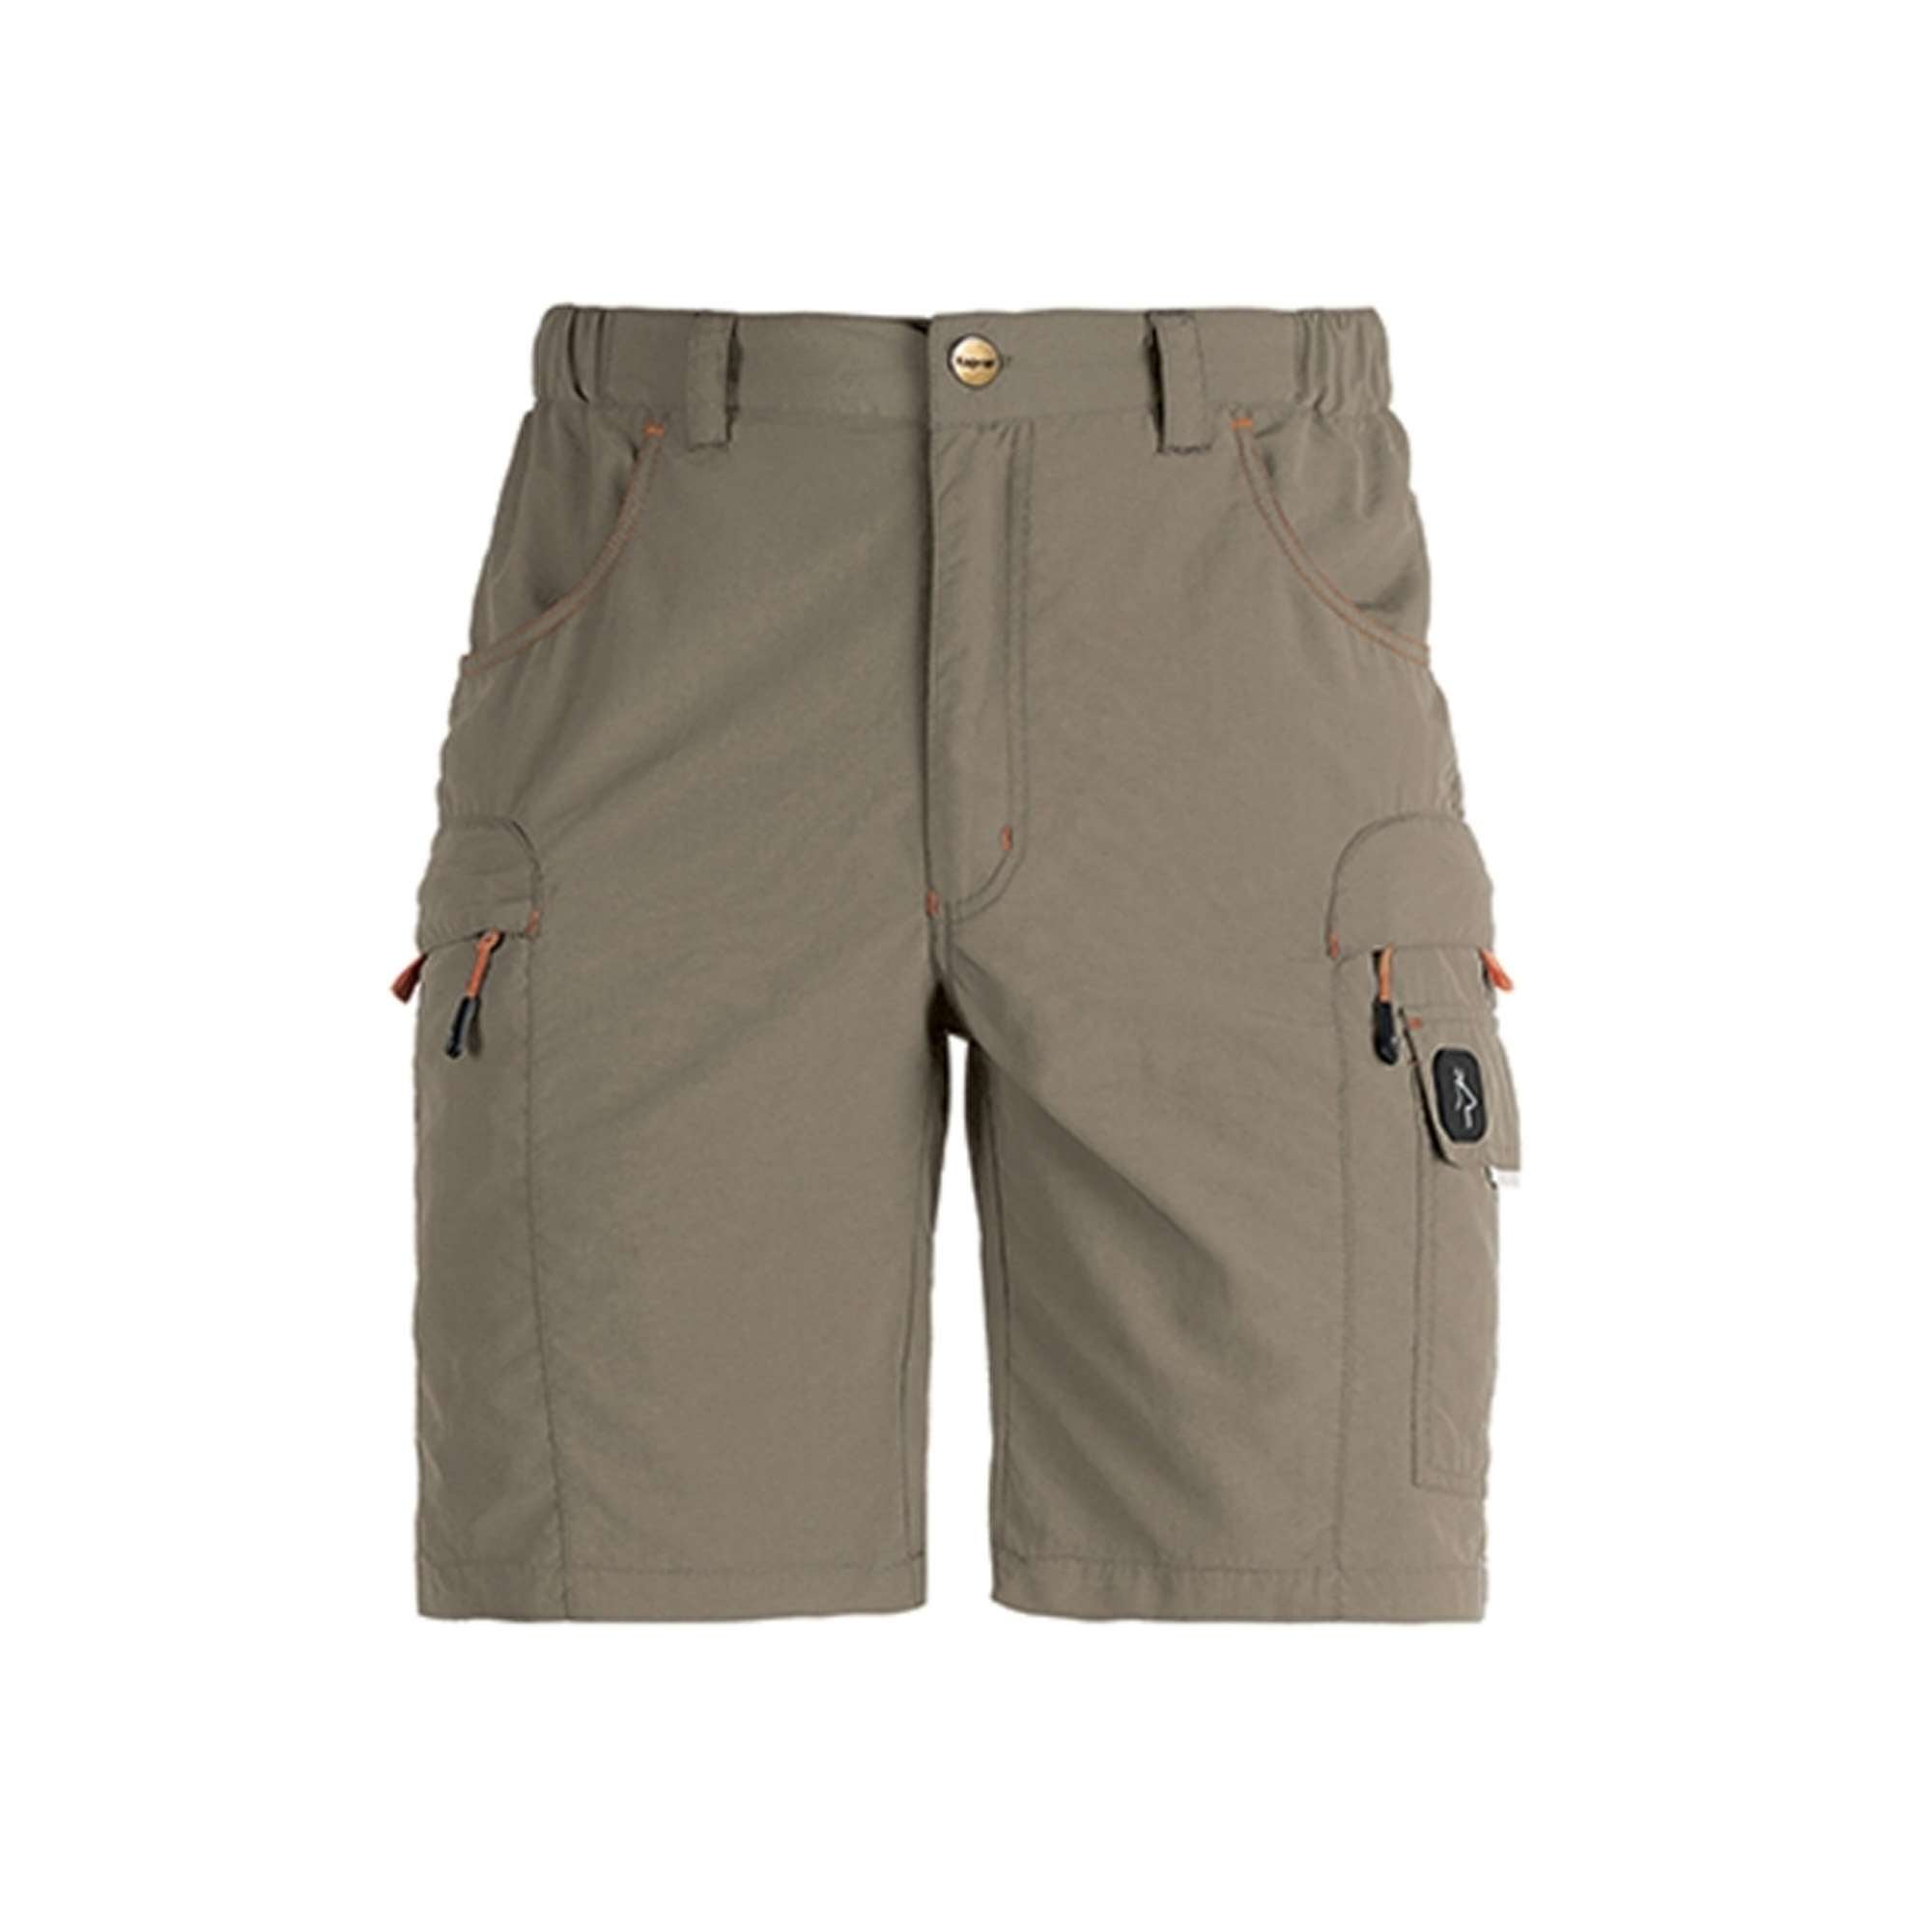 GHIBLI green/beige shorts TG M/L/XXL - 36385 Kapriol